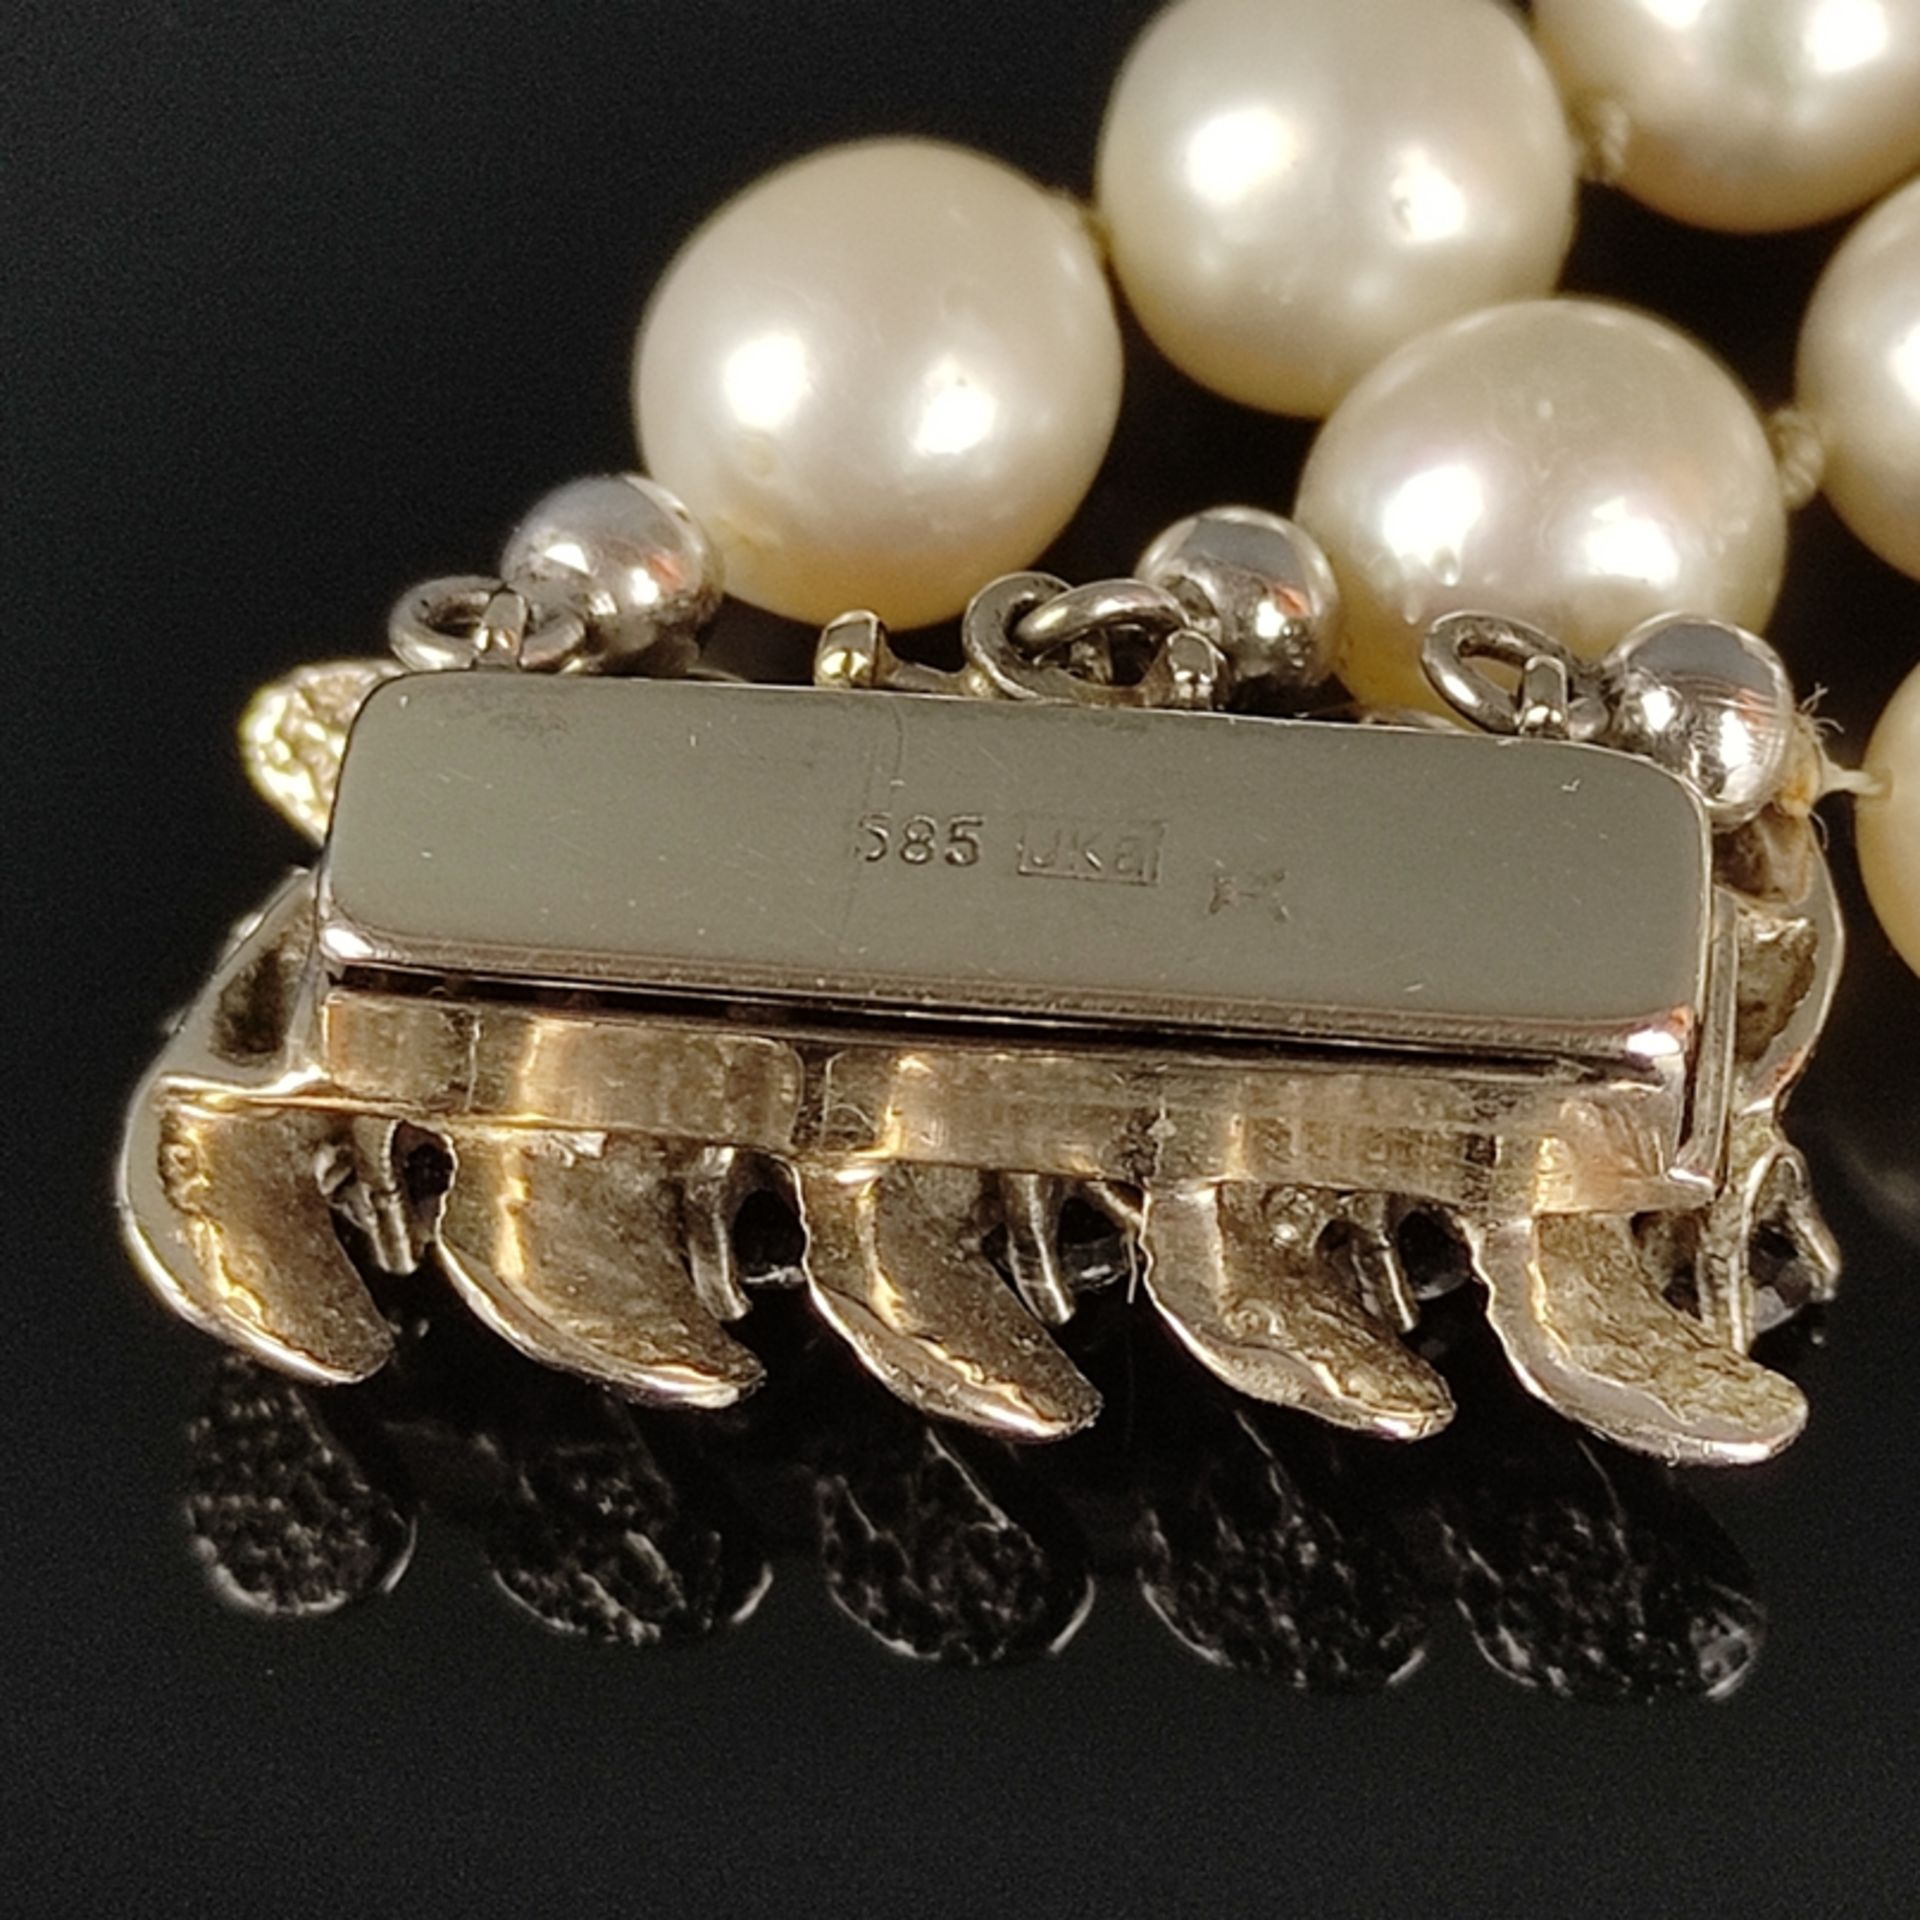 Perlen-Armband mit Goldschließe, 585/14K Weißgold (punziert), Gesamtgewicht 48,2g, Schließe besetzt - Bild 4 aus 4